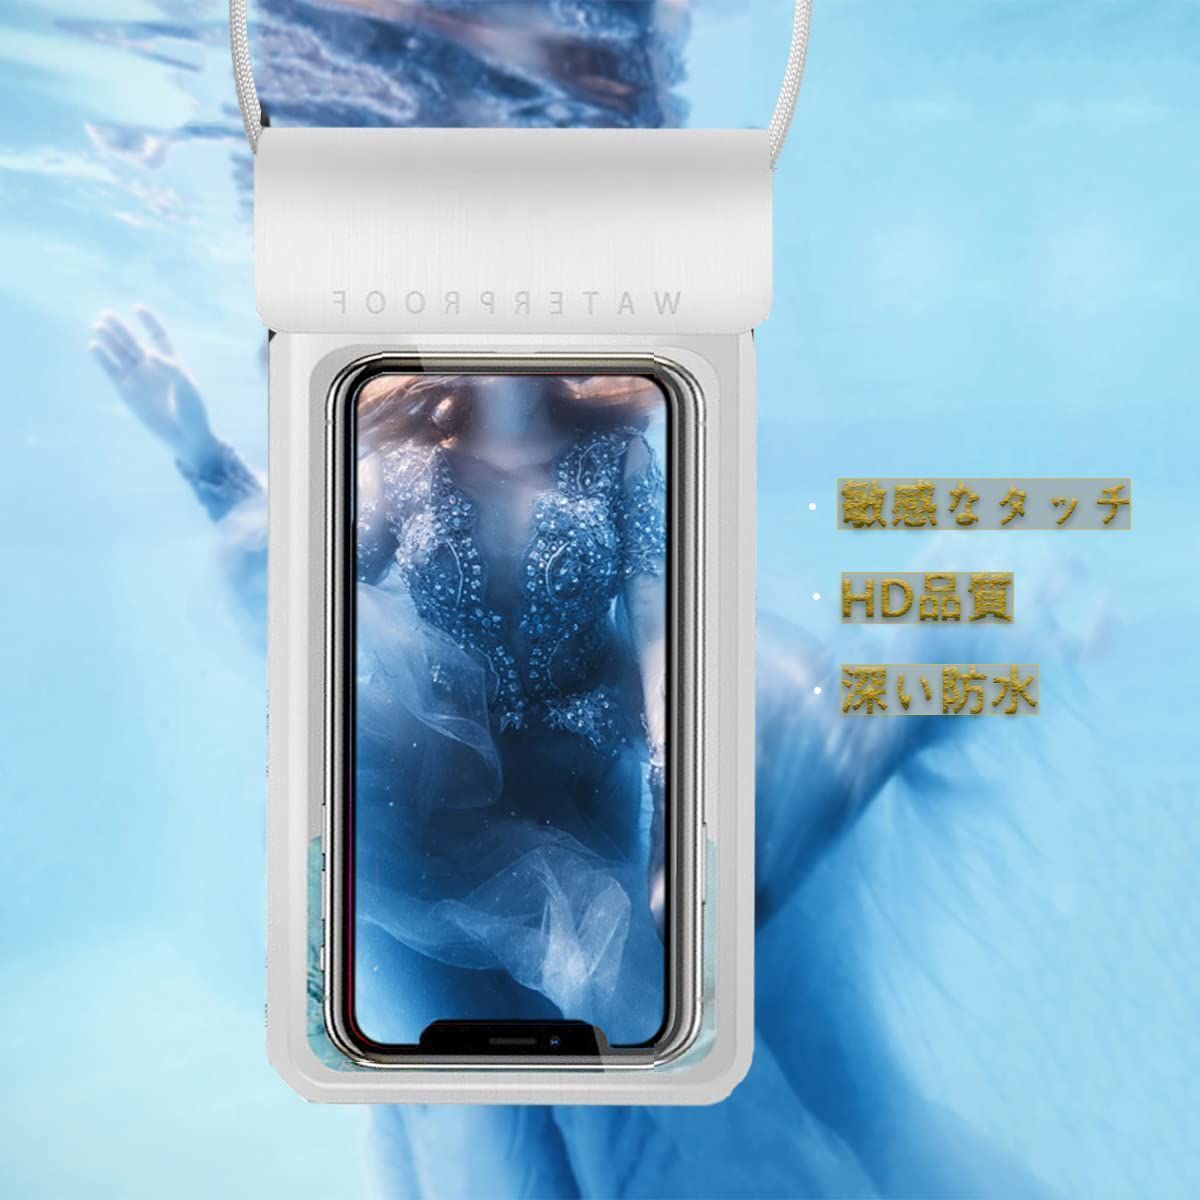 【在庫セール】水泳 温泉 プール 海 お風呂 水中撮影 等多機種対応 など適用 iPhone/Android 最大6.5インチ対応 顔認証 IPX8防水 (グレー) スマホ用 防水ケース ホルターネック スマホ防水ケース